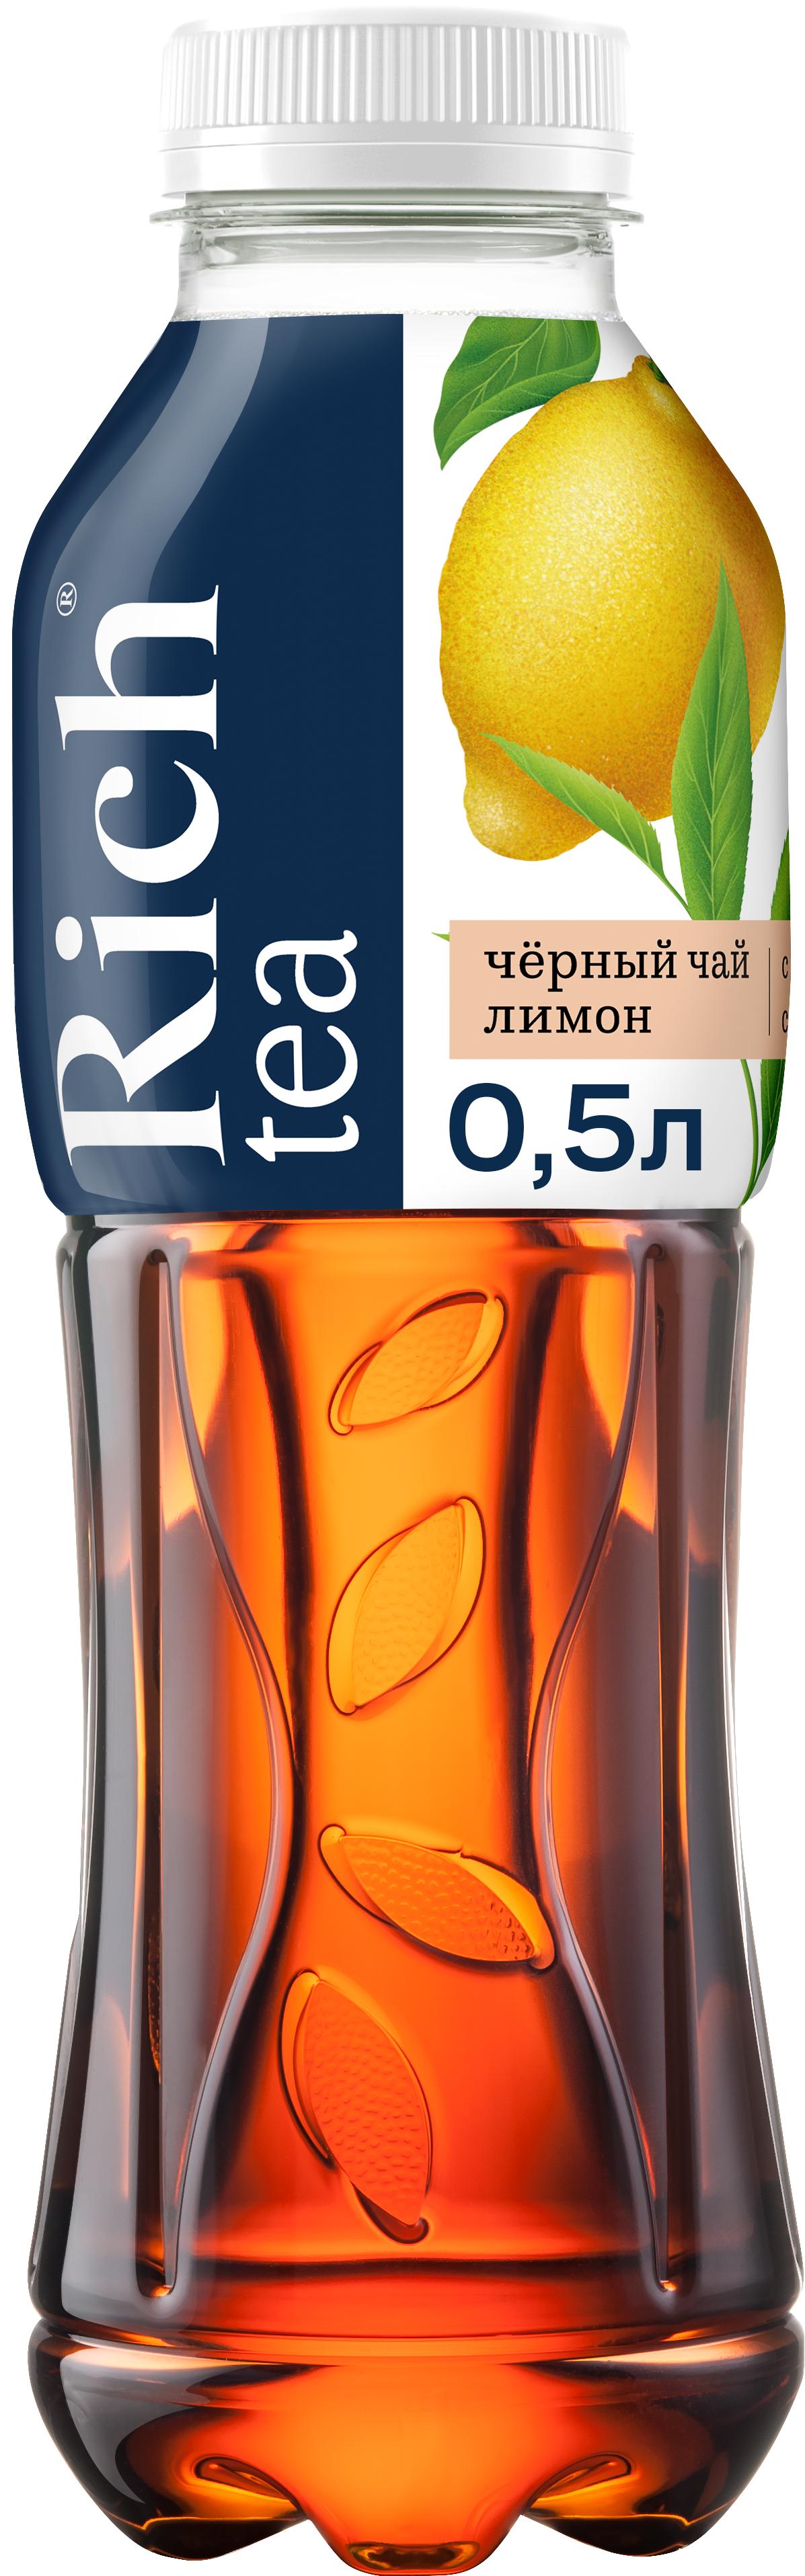 Напиток Rich Черный чай Лимон, 500 мл., ПЭТ